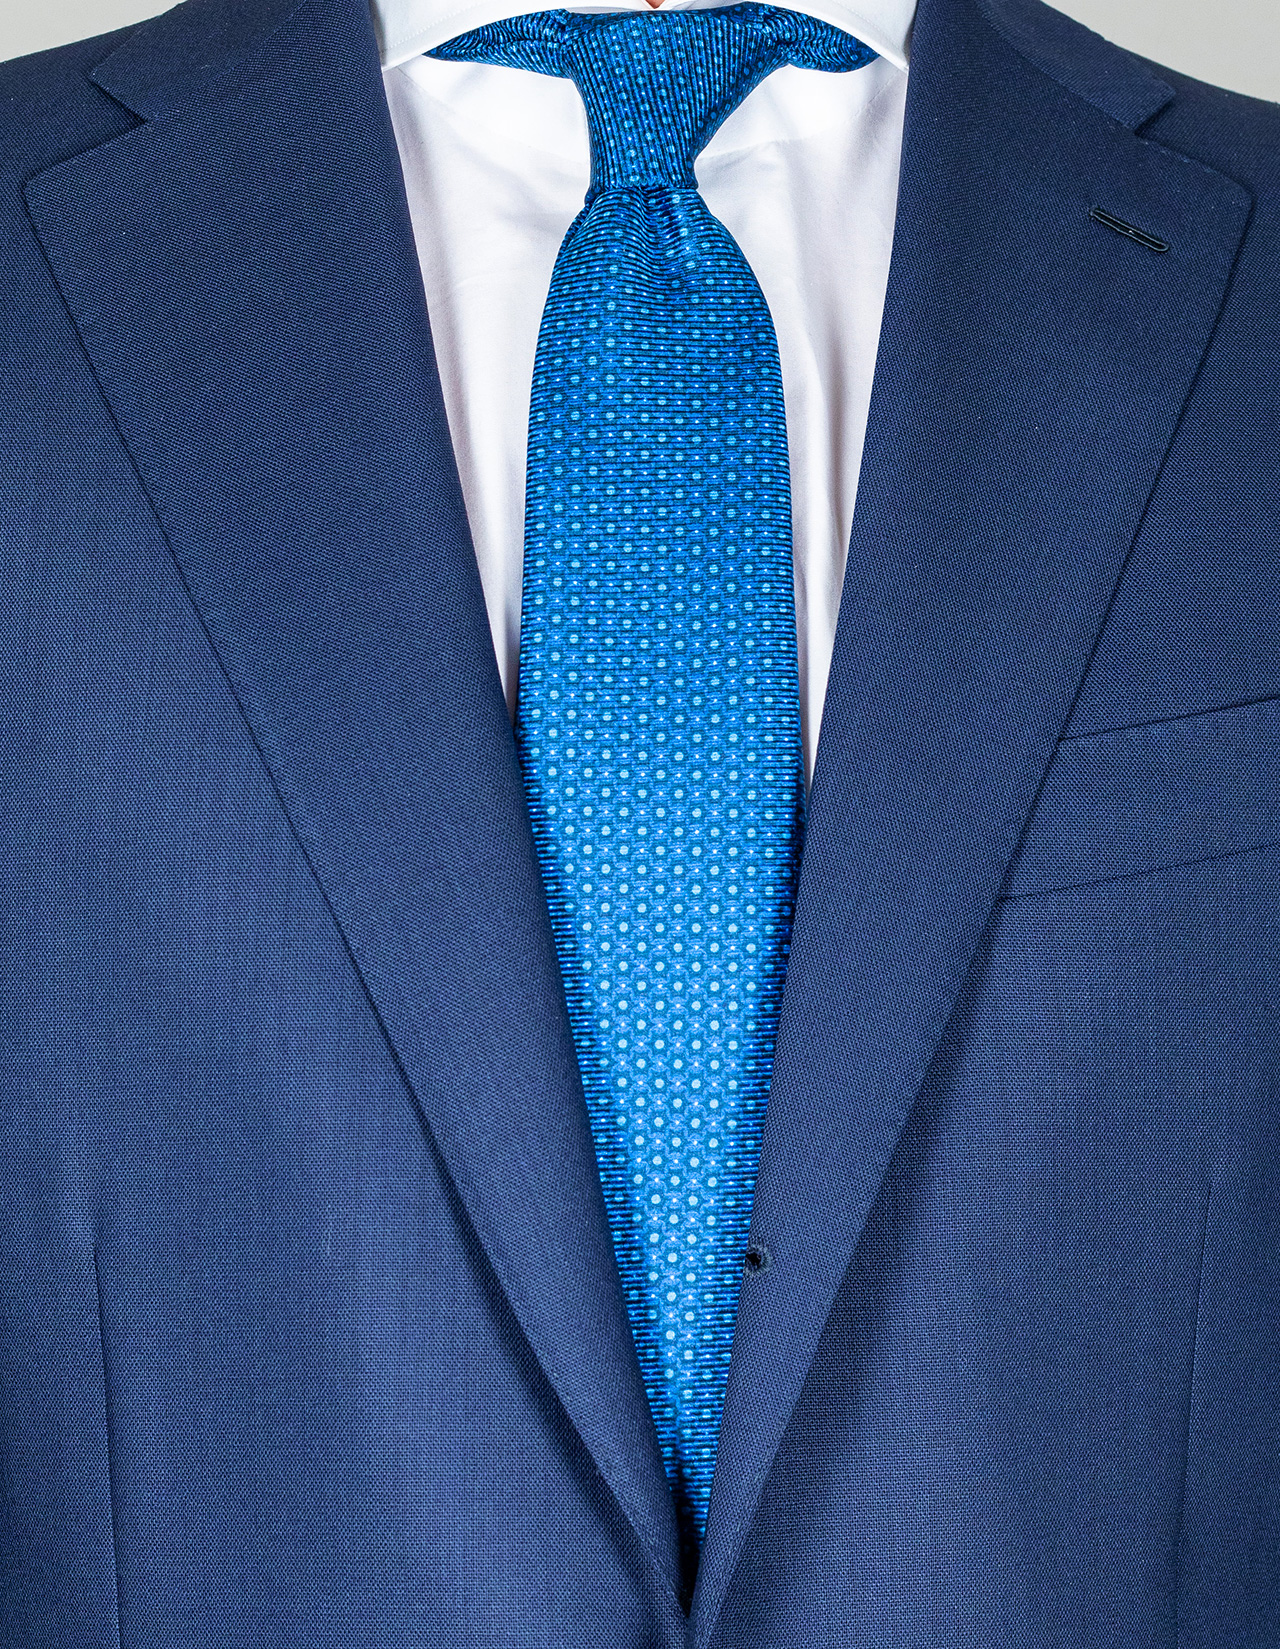 Kiton Krawatte in blau mit Punkten und Muster